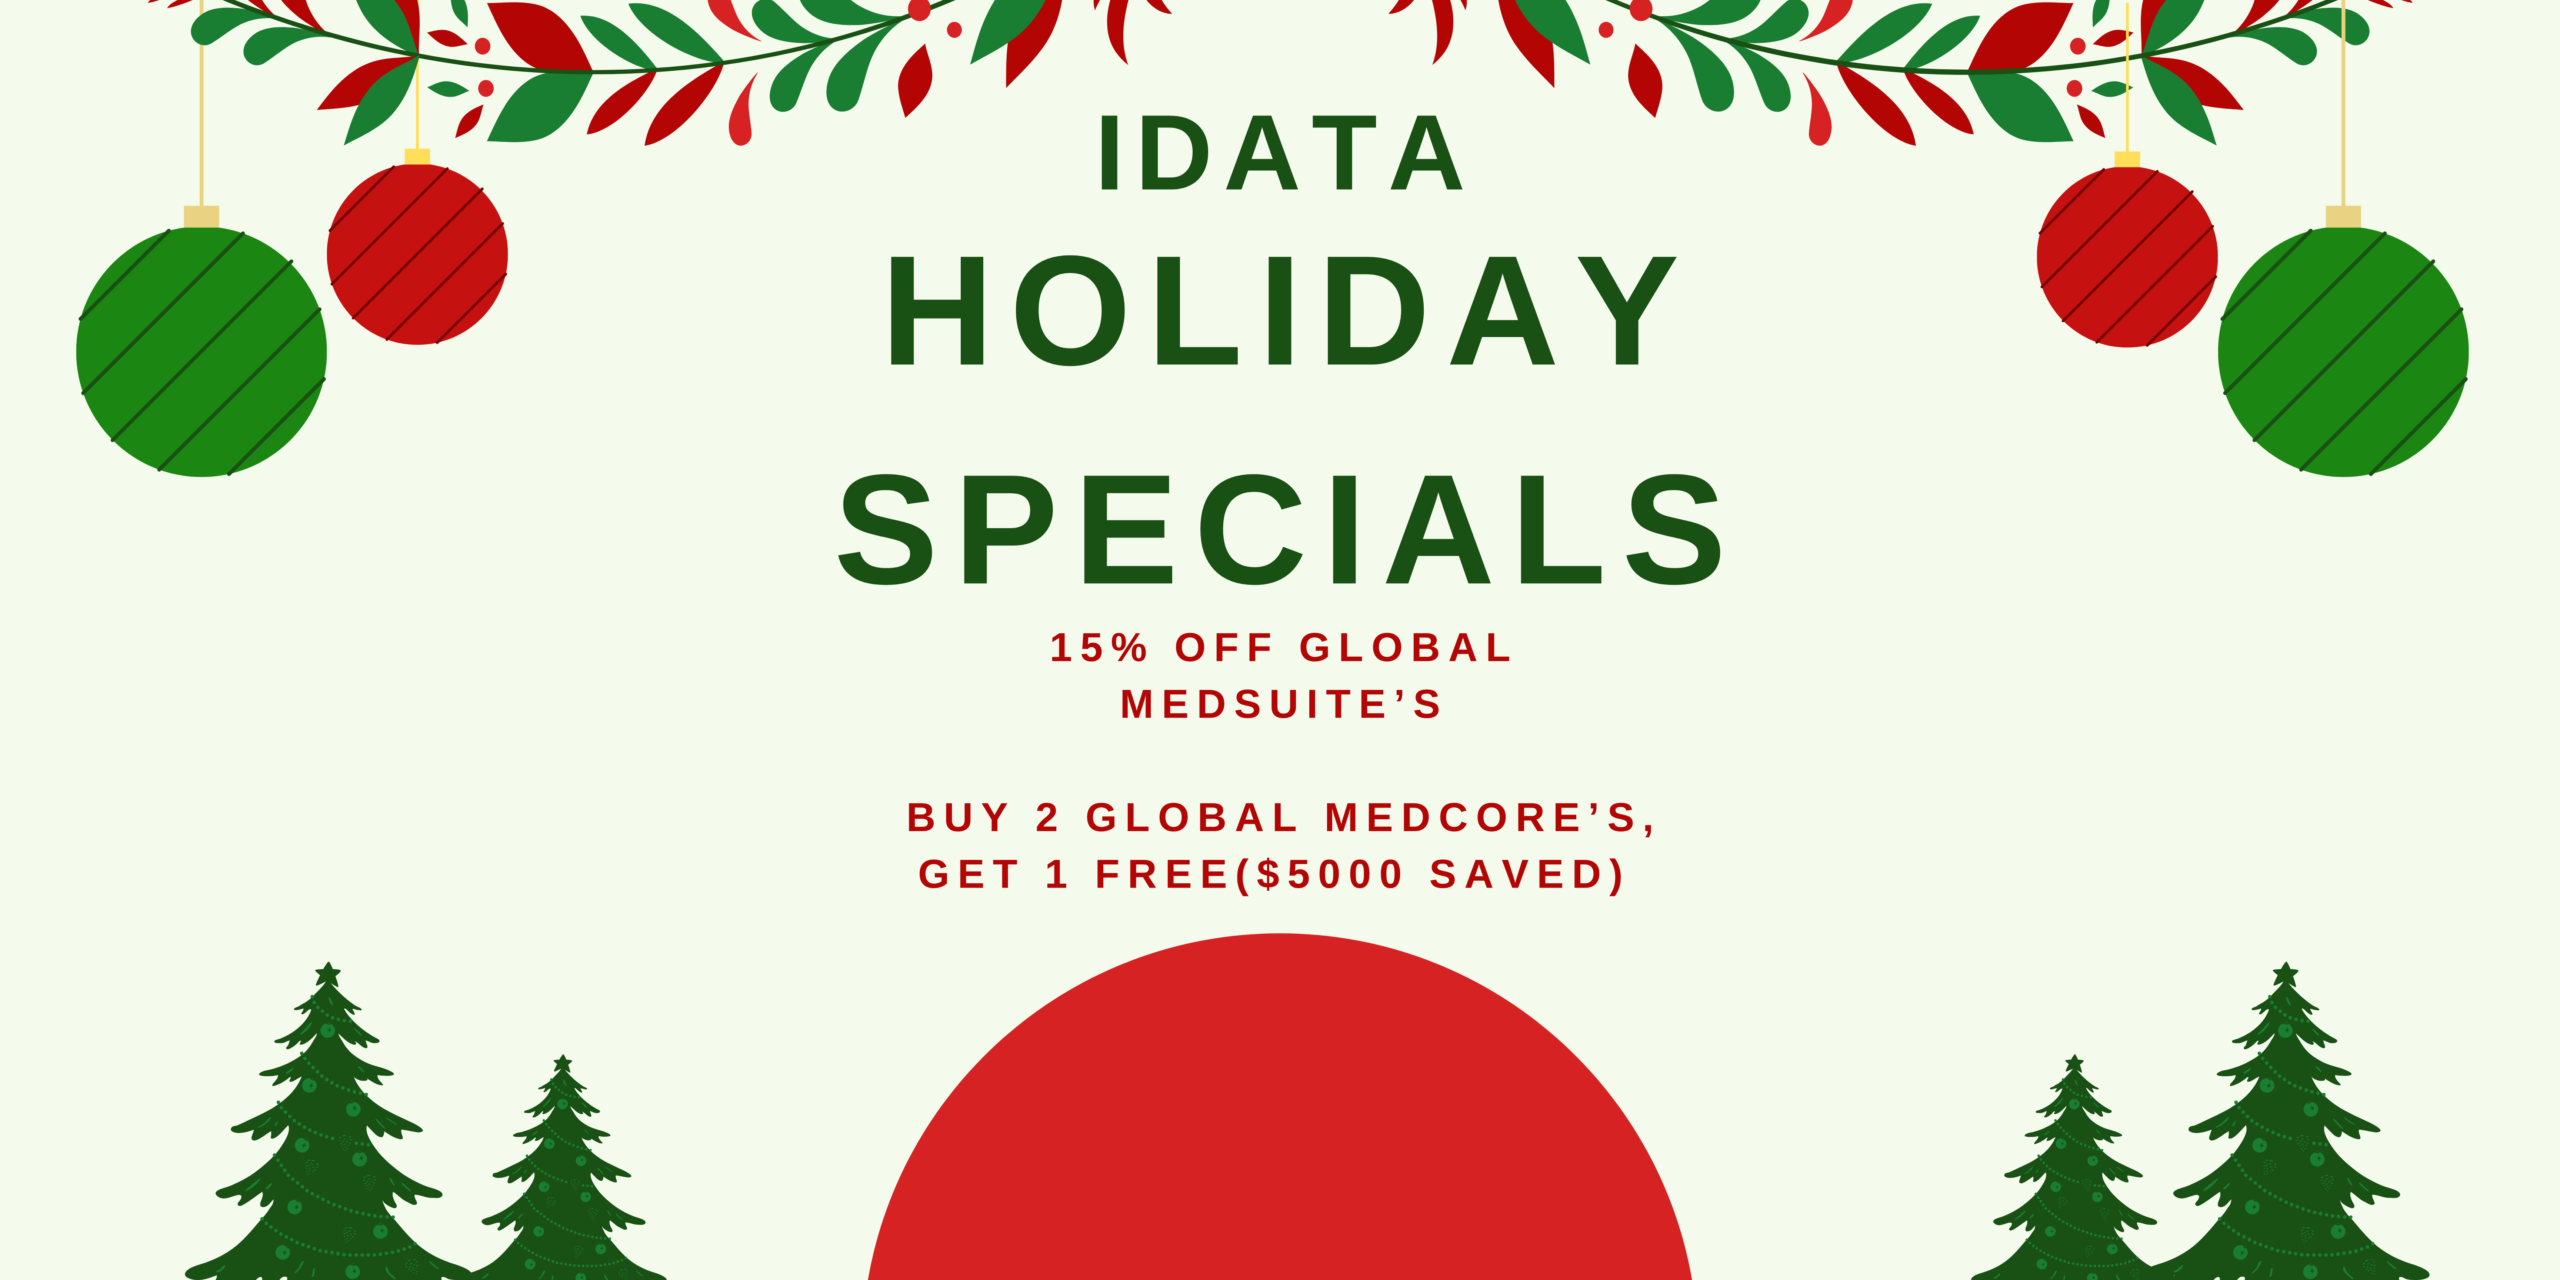 Idata holiday specials